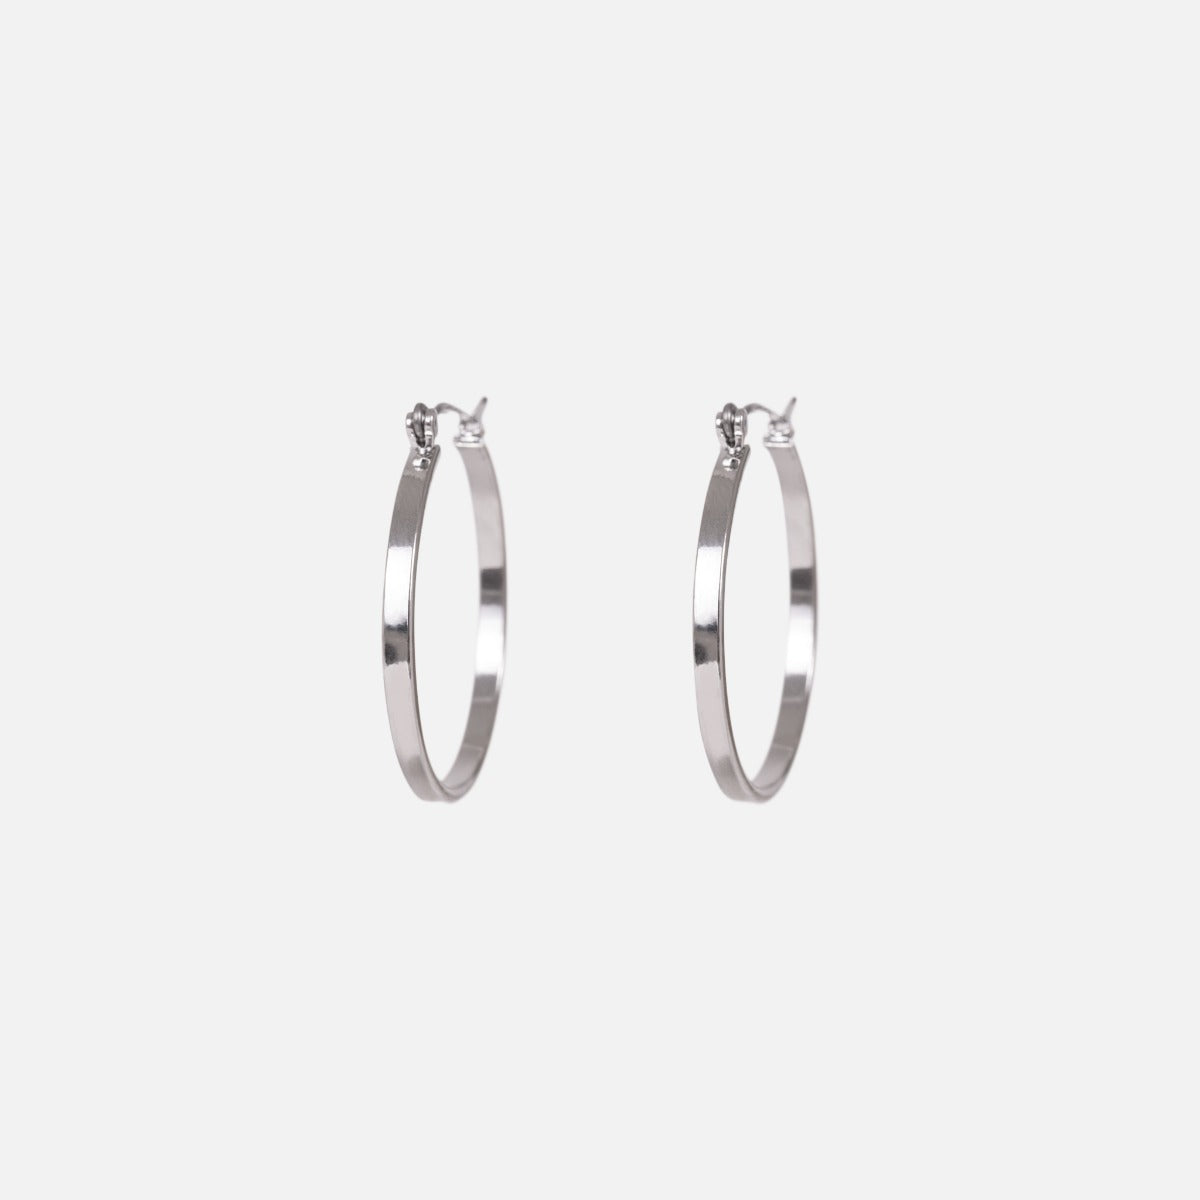 Duo boucles d’oreilles anneaux argentés et petites pierres scintillantes